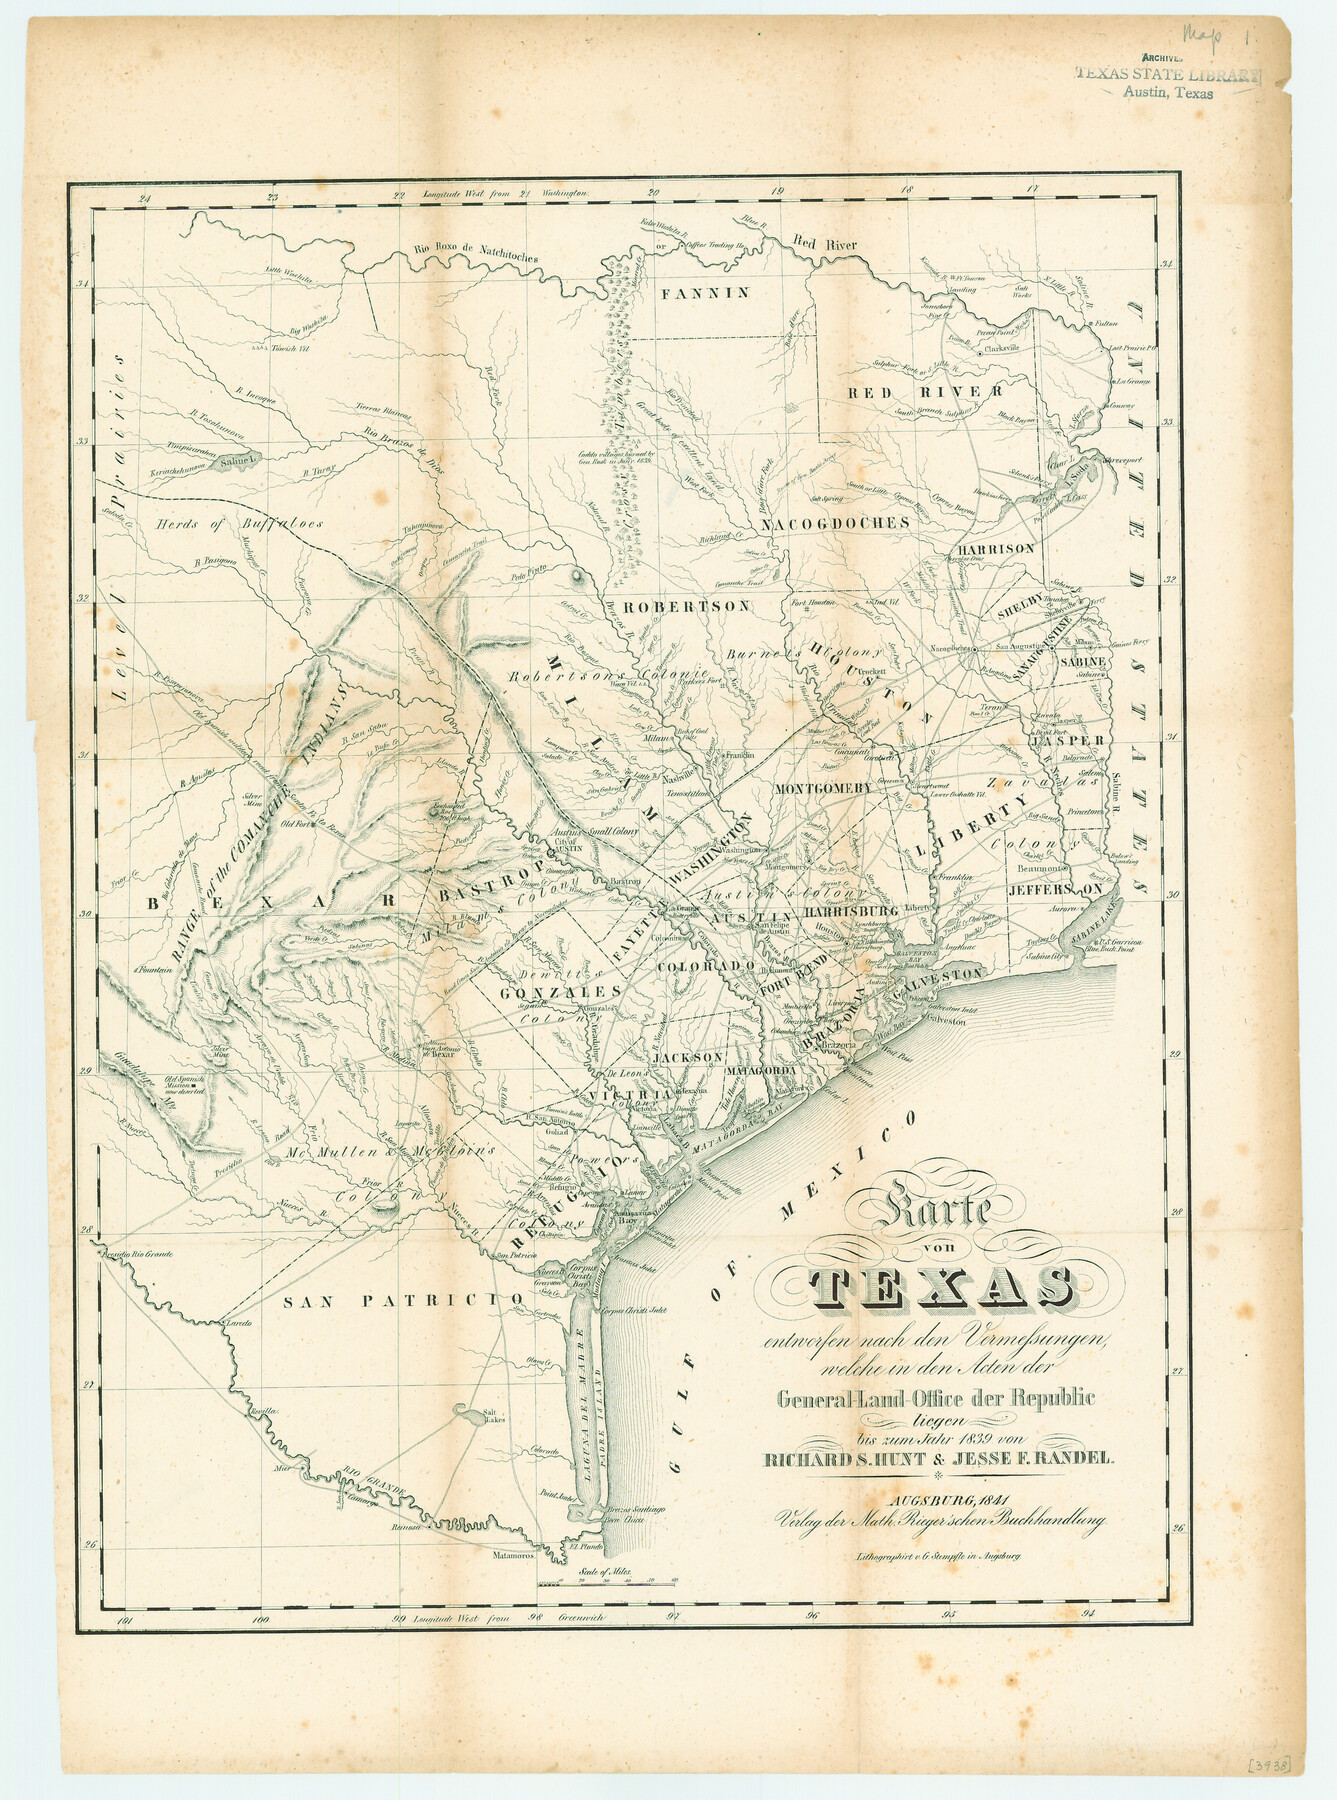 79311, Karte von Texas entworfen nach den Vermessungen, welche in den Acten der General-Land-Office der Republic liegen bis zum Jahr 1839 von Richard S. Hunt & Jesse F. Randel, Texas State Library and Archives